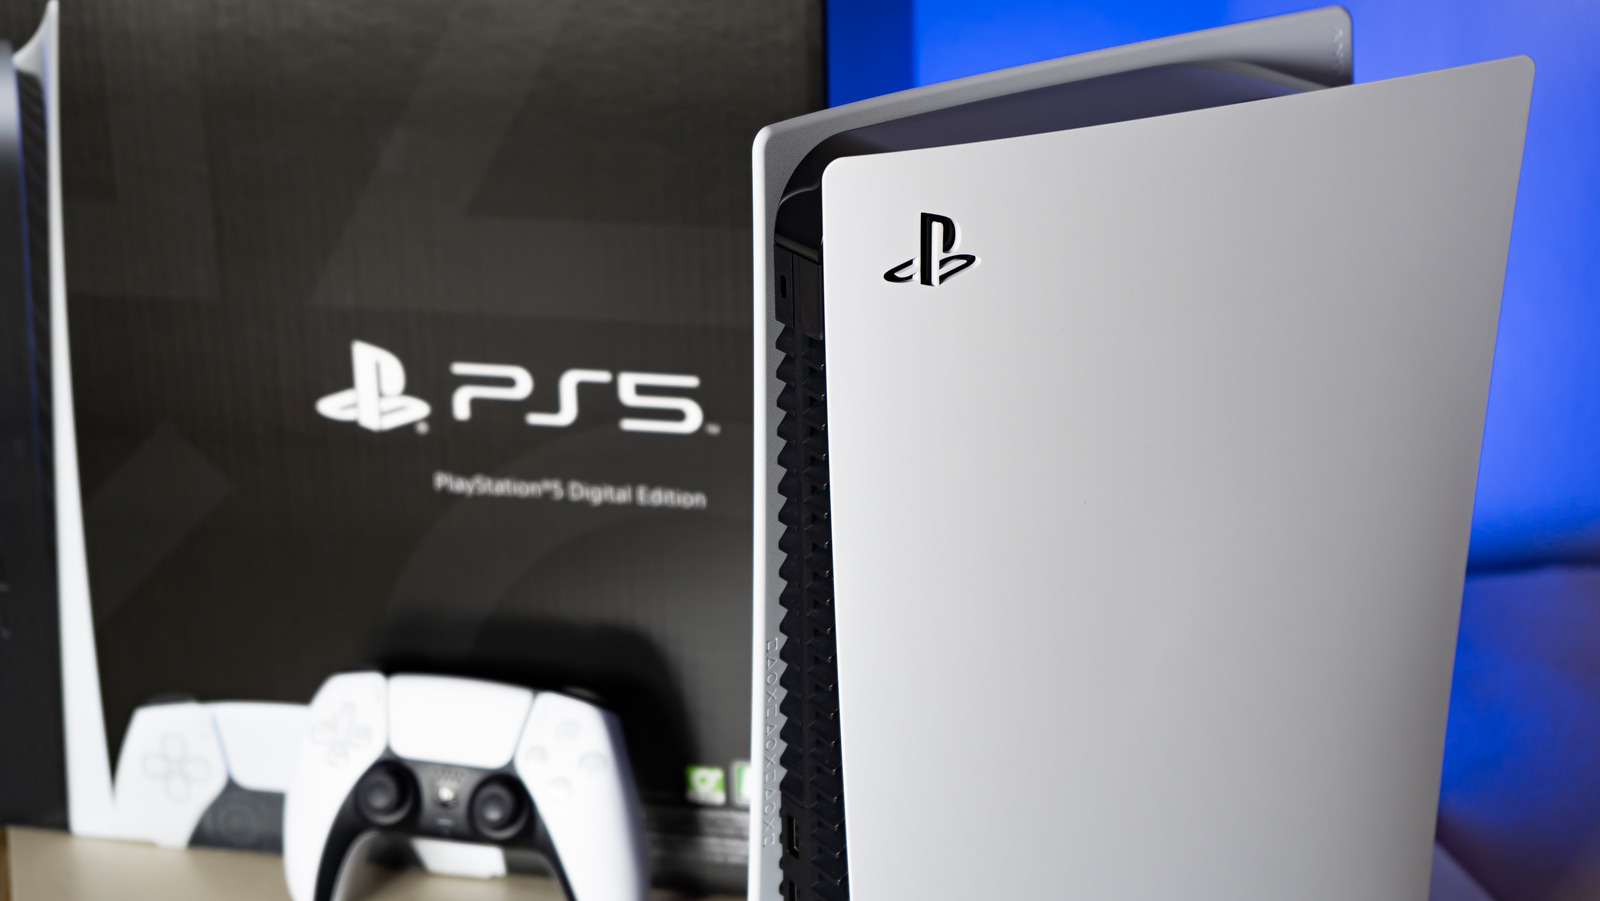 Sony PS5 Slim To Be Released In November